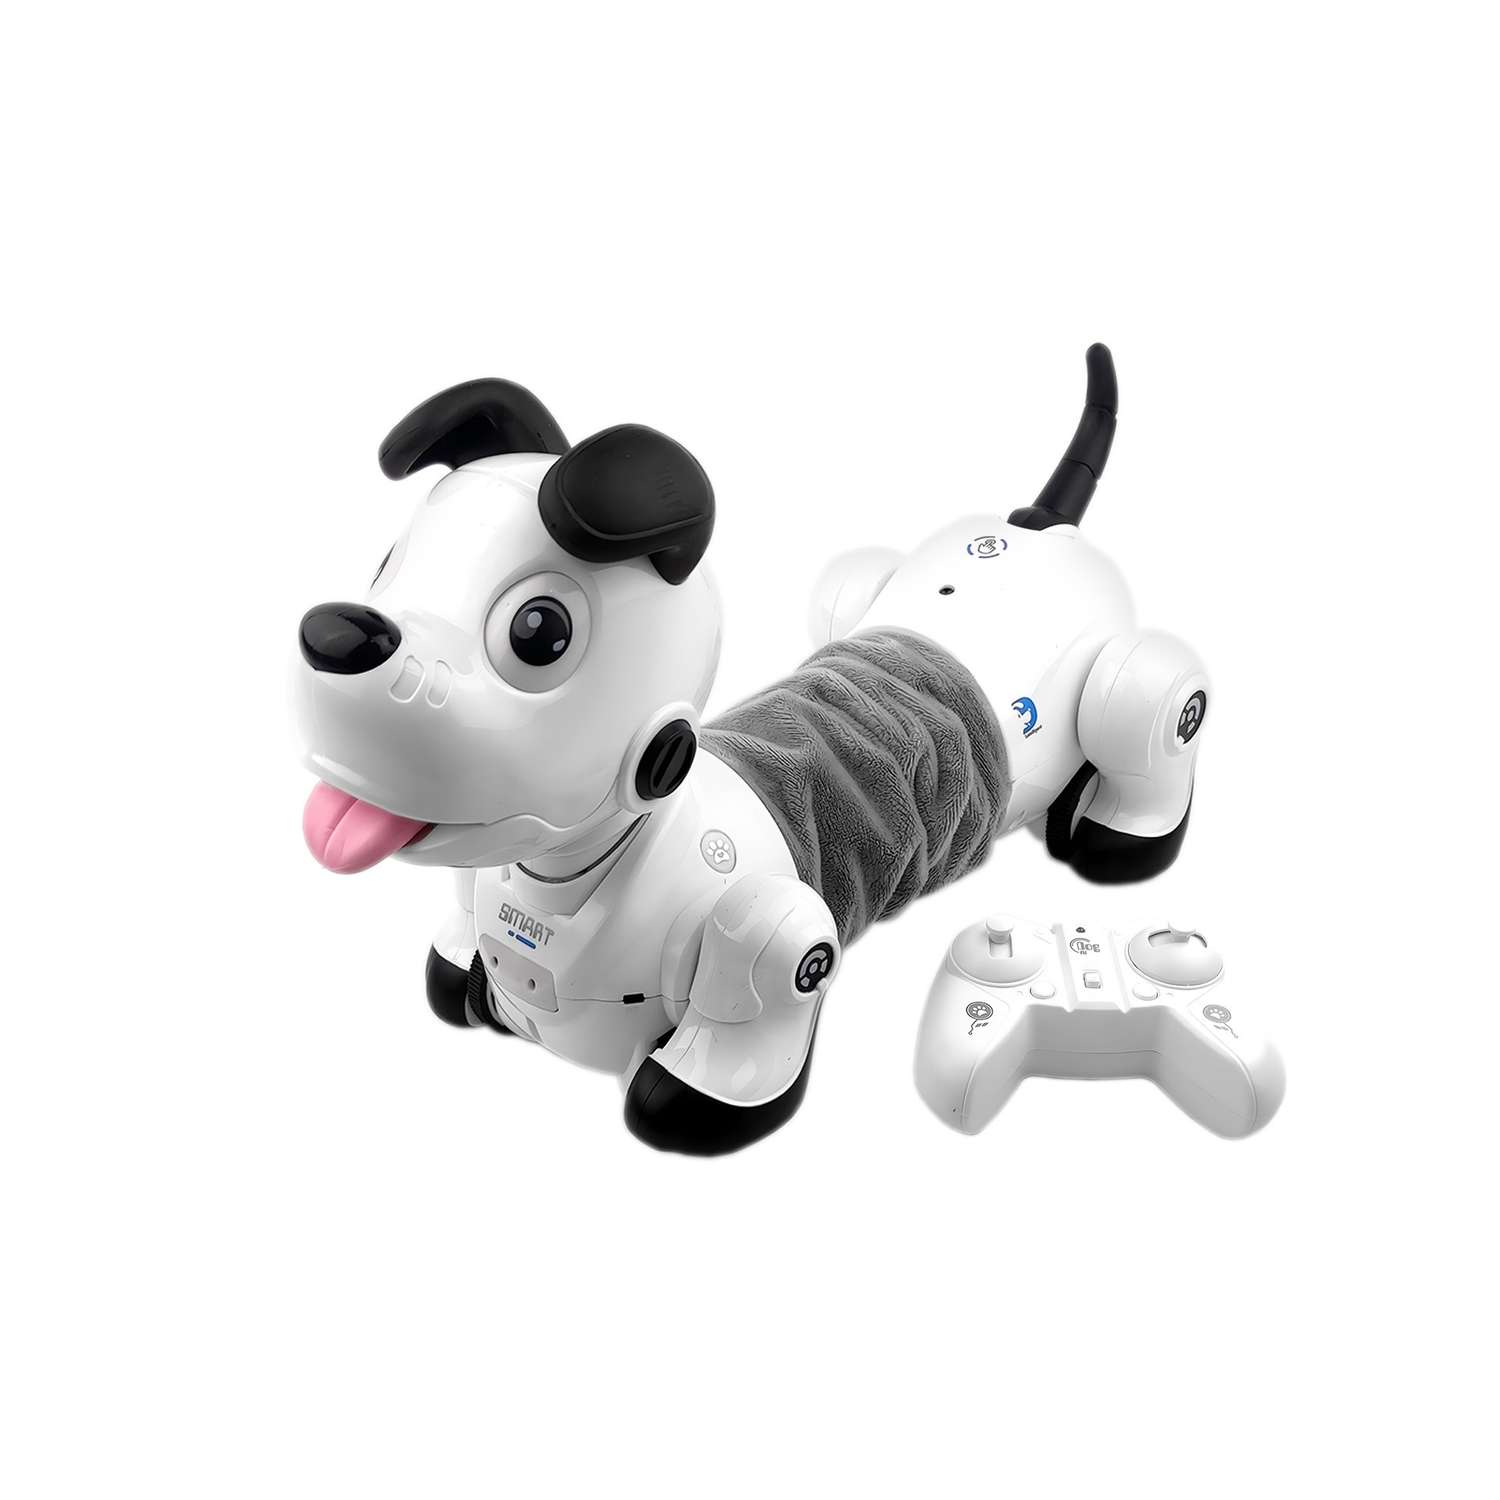 Радиоуправляемая робот-собака Happy Cow Smart Dachshund 2.4G - фото 1